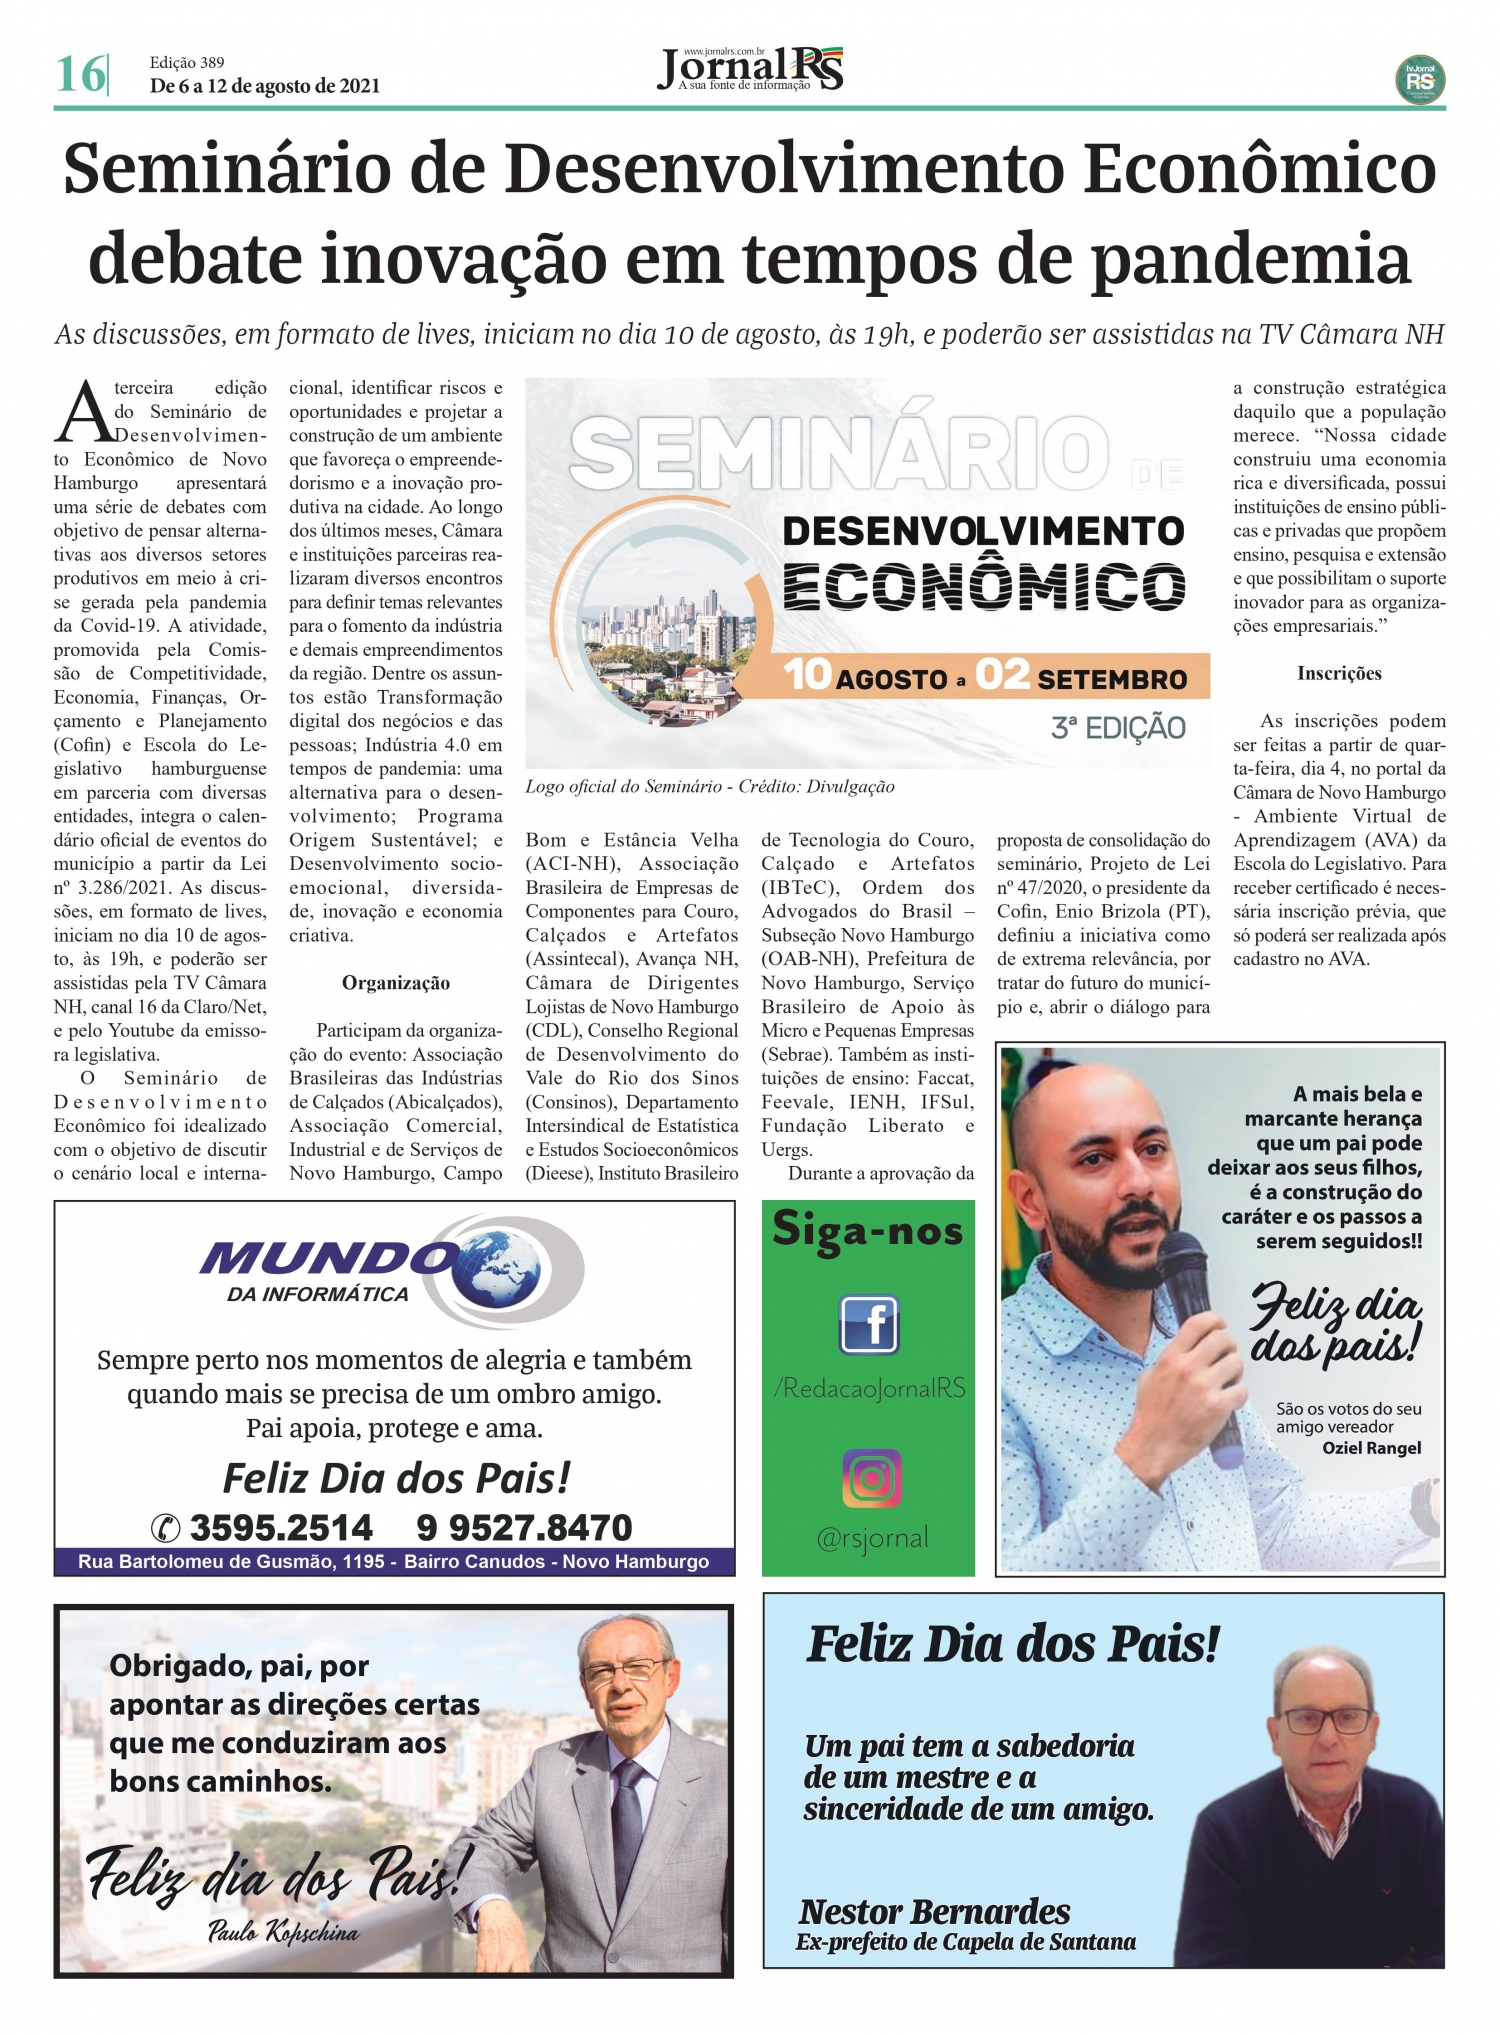 CDL NH é noticia em jornal da região com o Seminário de Desenvolvimento Economico 